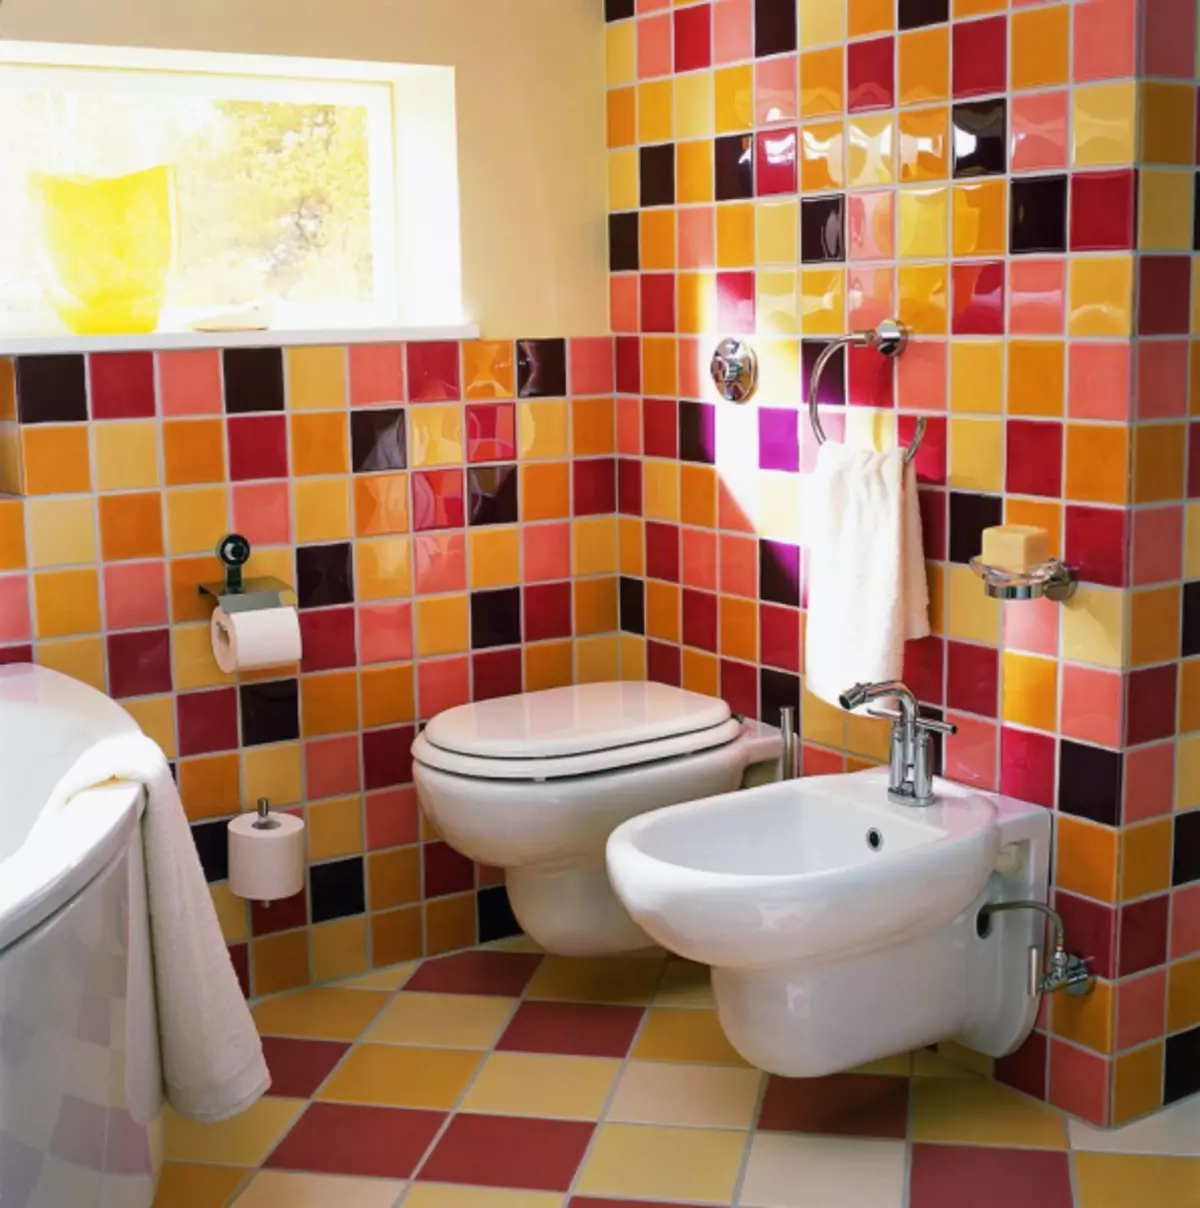 Vloer-toilethoogte: installatienormen en typen